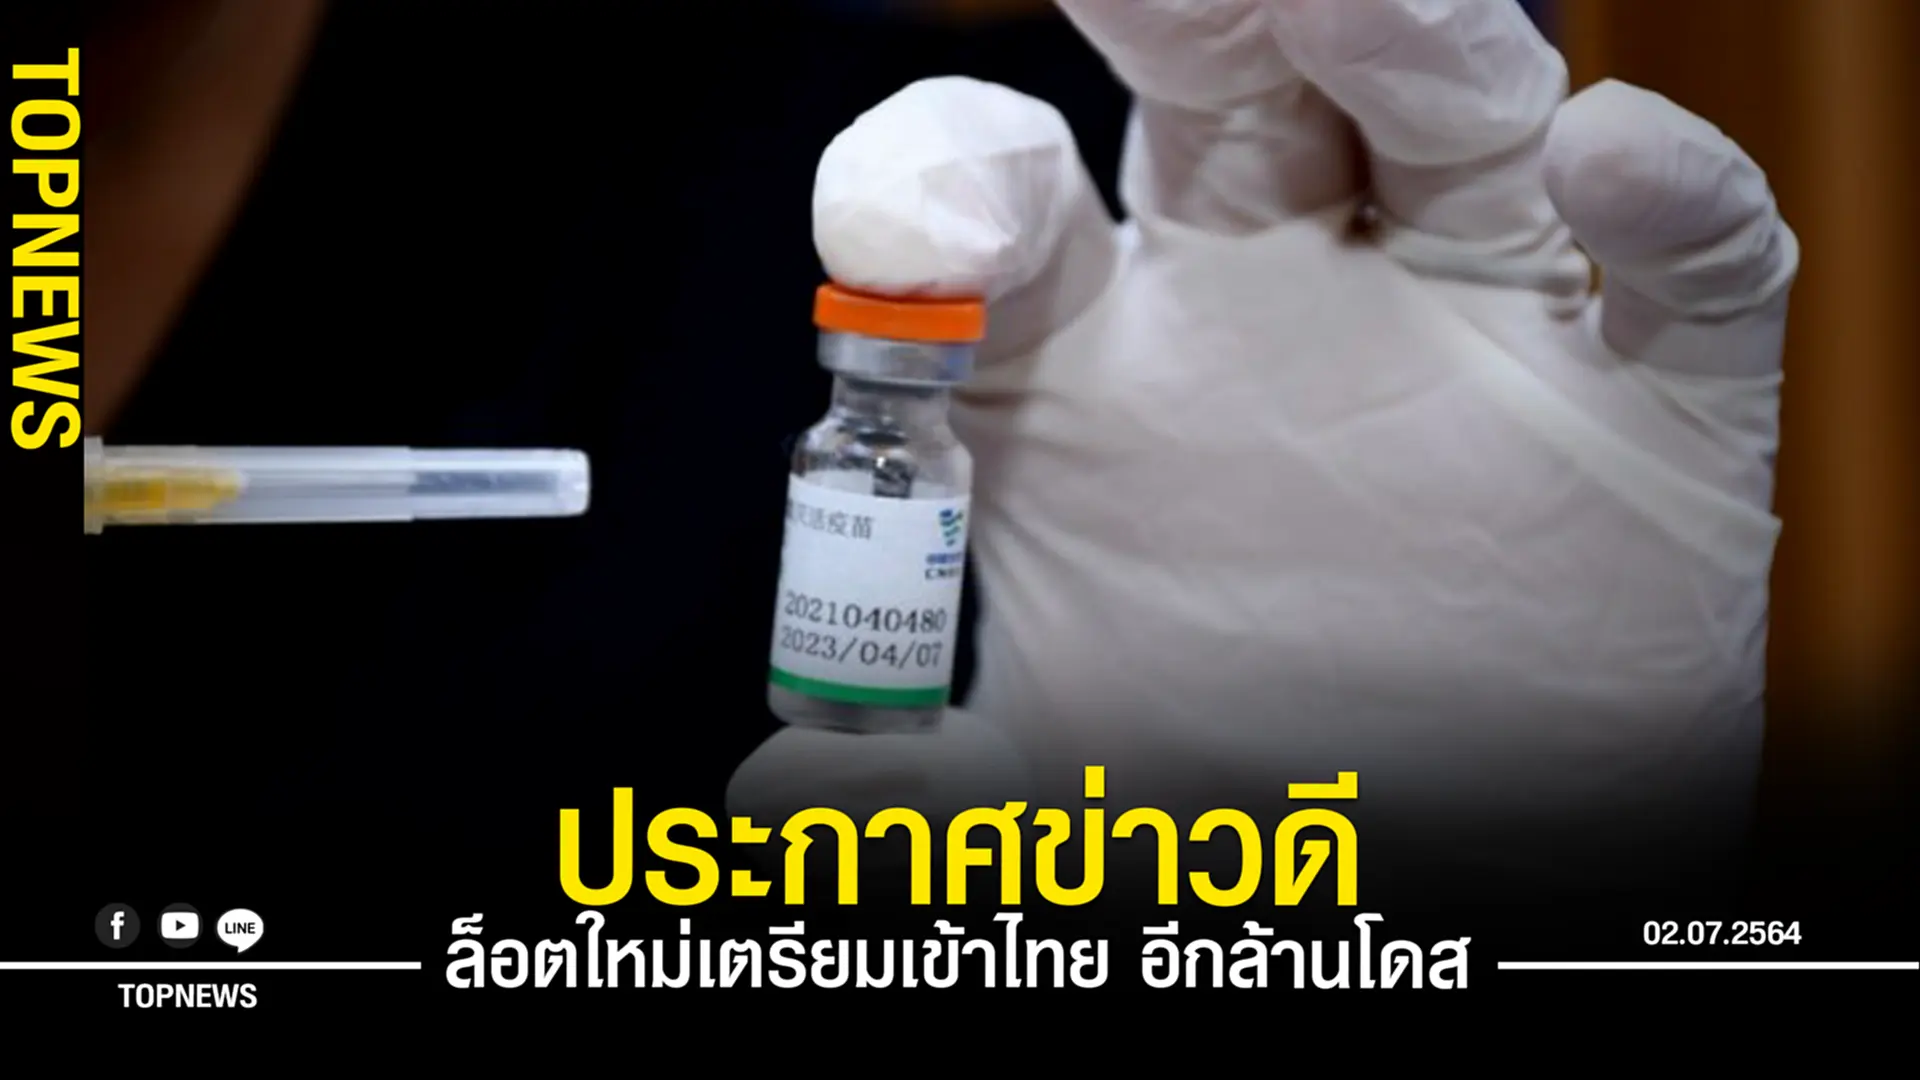 “หมอนิธิ” ประกาศข่าวดี “วัคซีนซิโนฟาร์ม” ล็อตใหม่เตรียมเข้าไทยอีกล้านโดส!